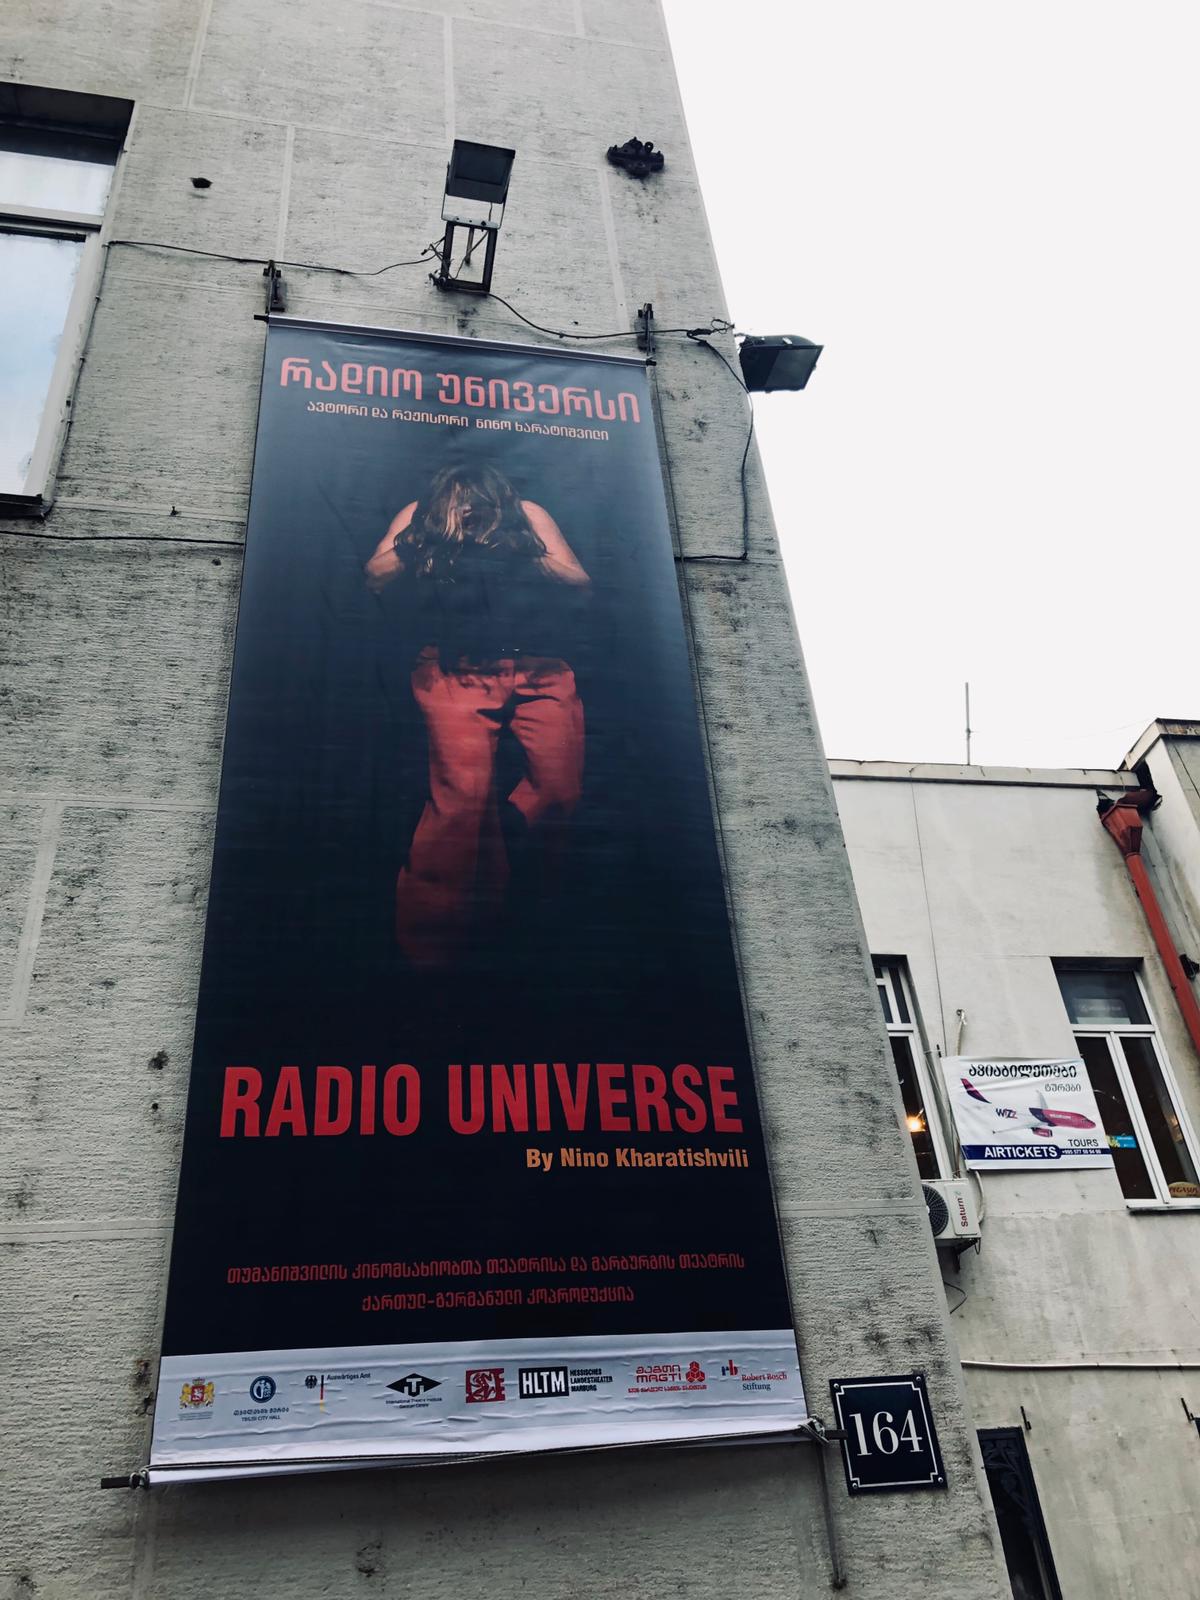 #02 – RADIO UNIVERSE in Tiflis.